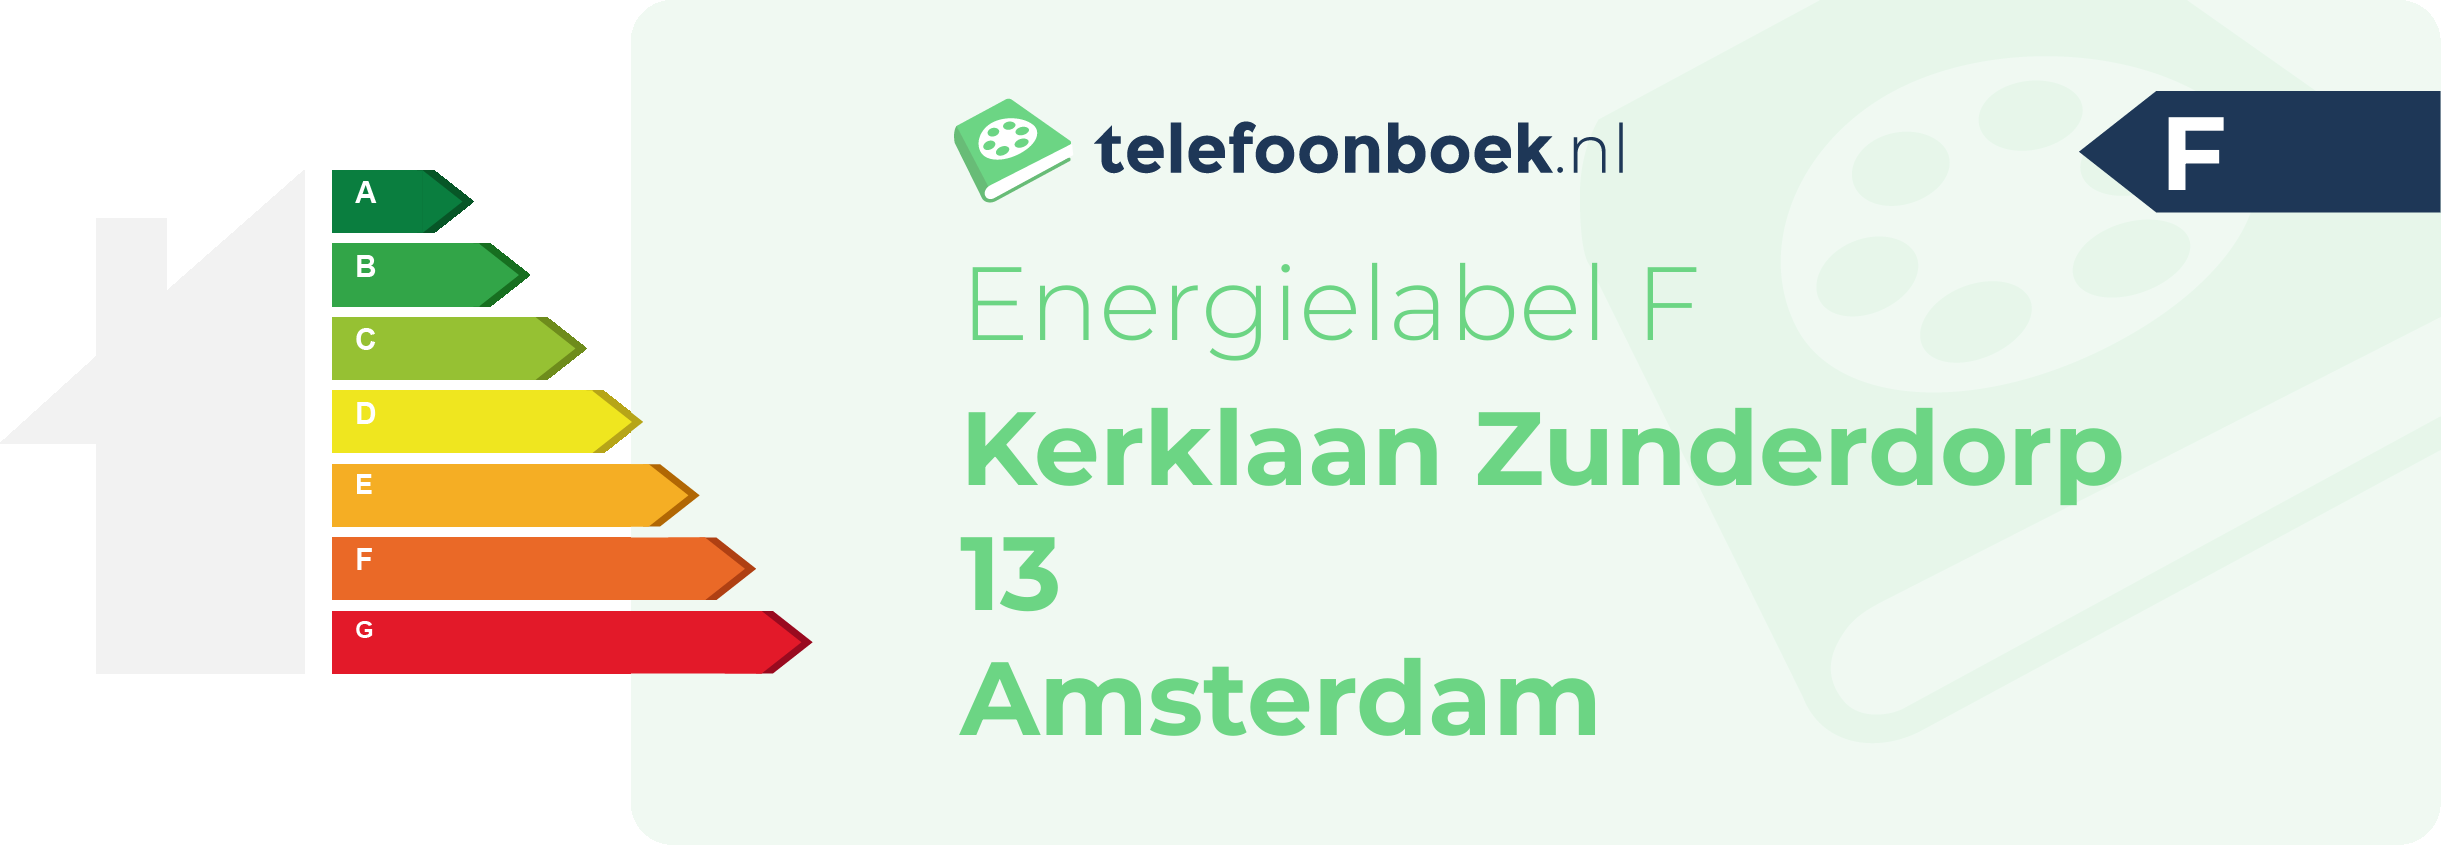 Energielabel Kerklaan Zunderdorp 13 Amsterdam